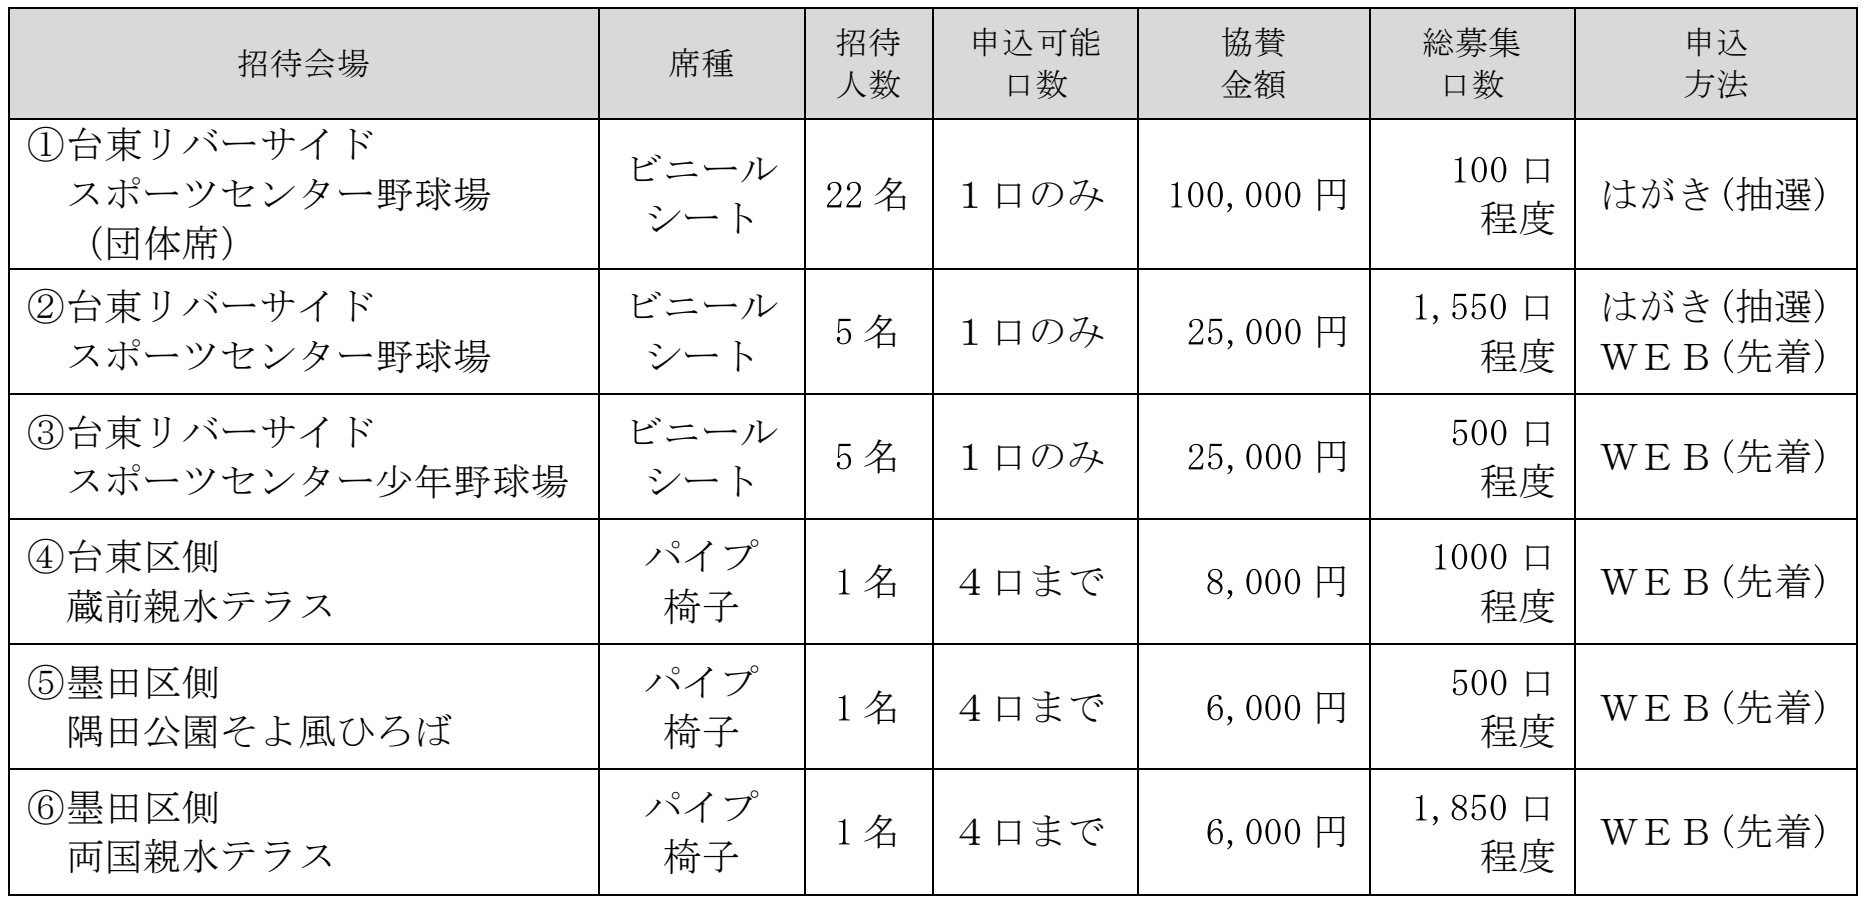 隅田川花火大会 有料席の情報